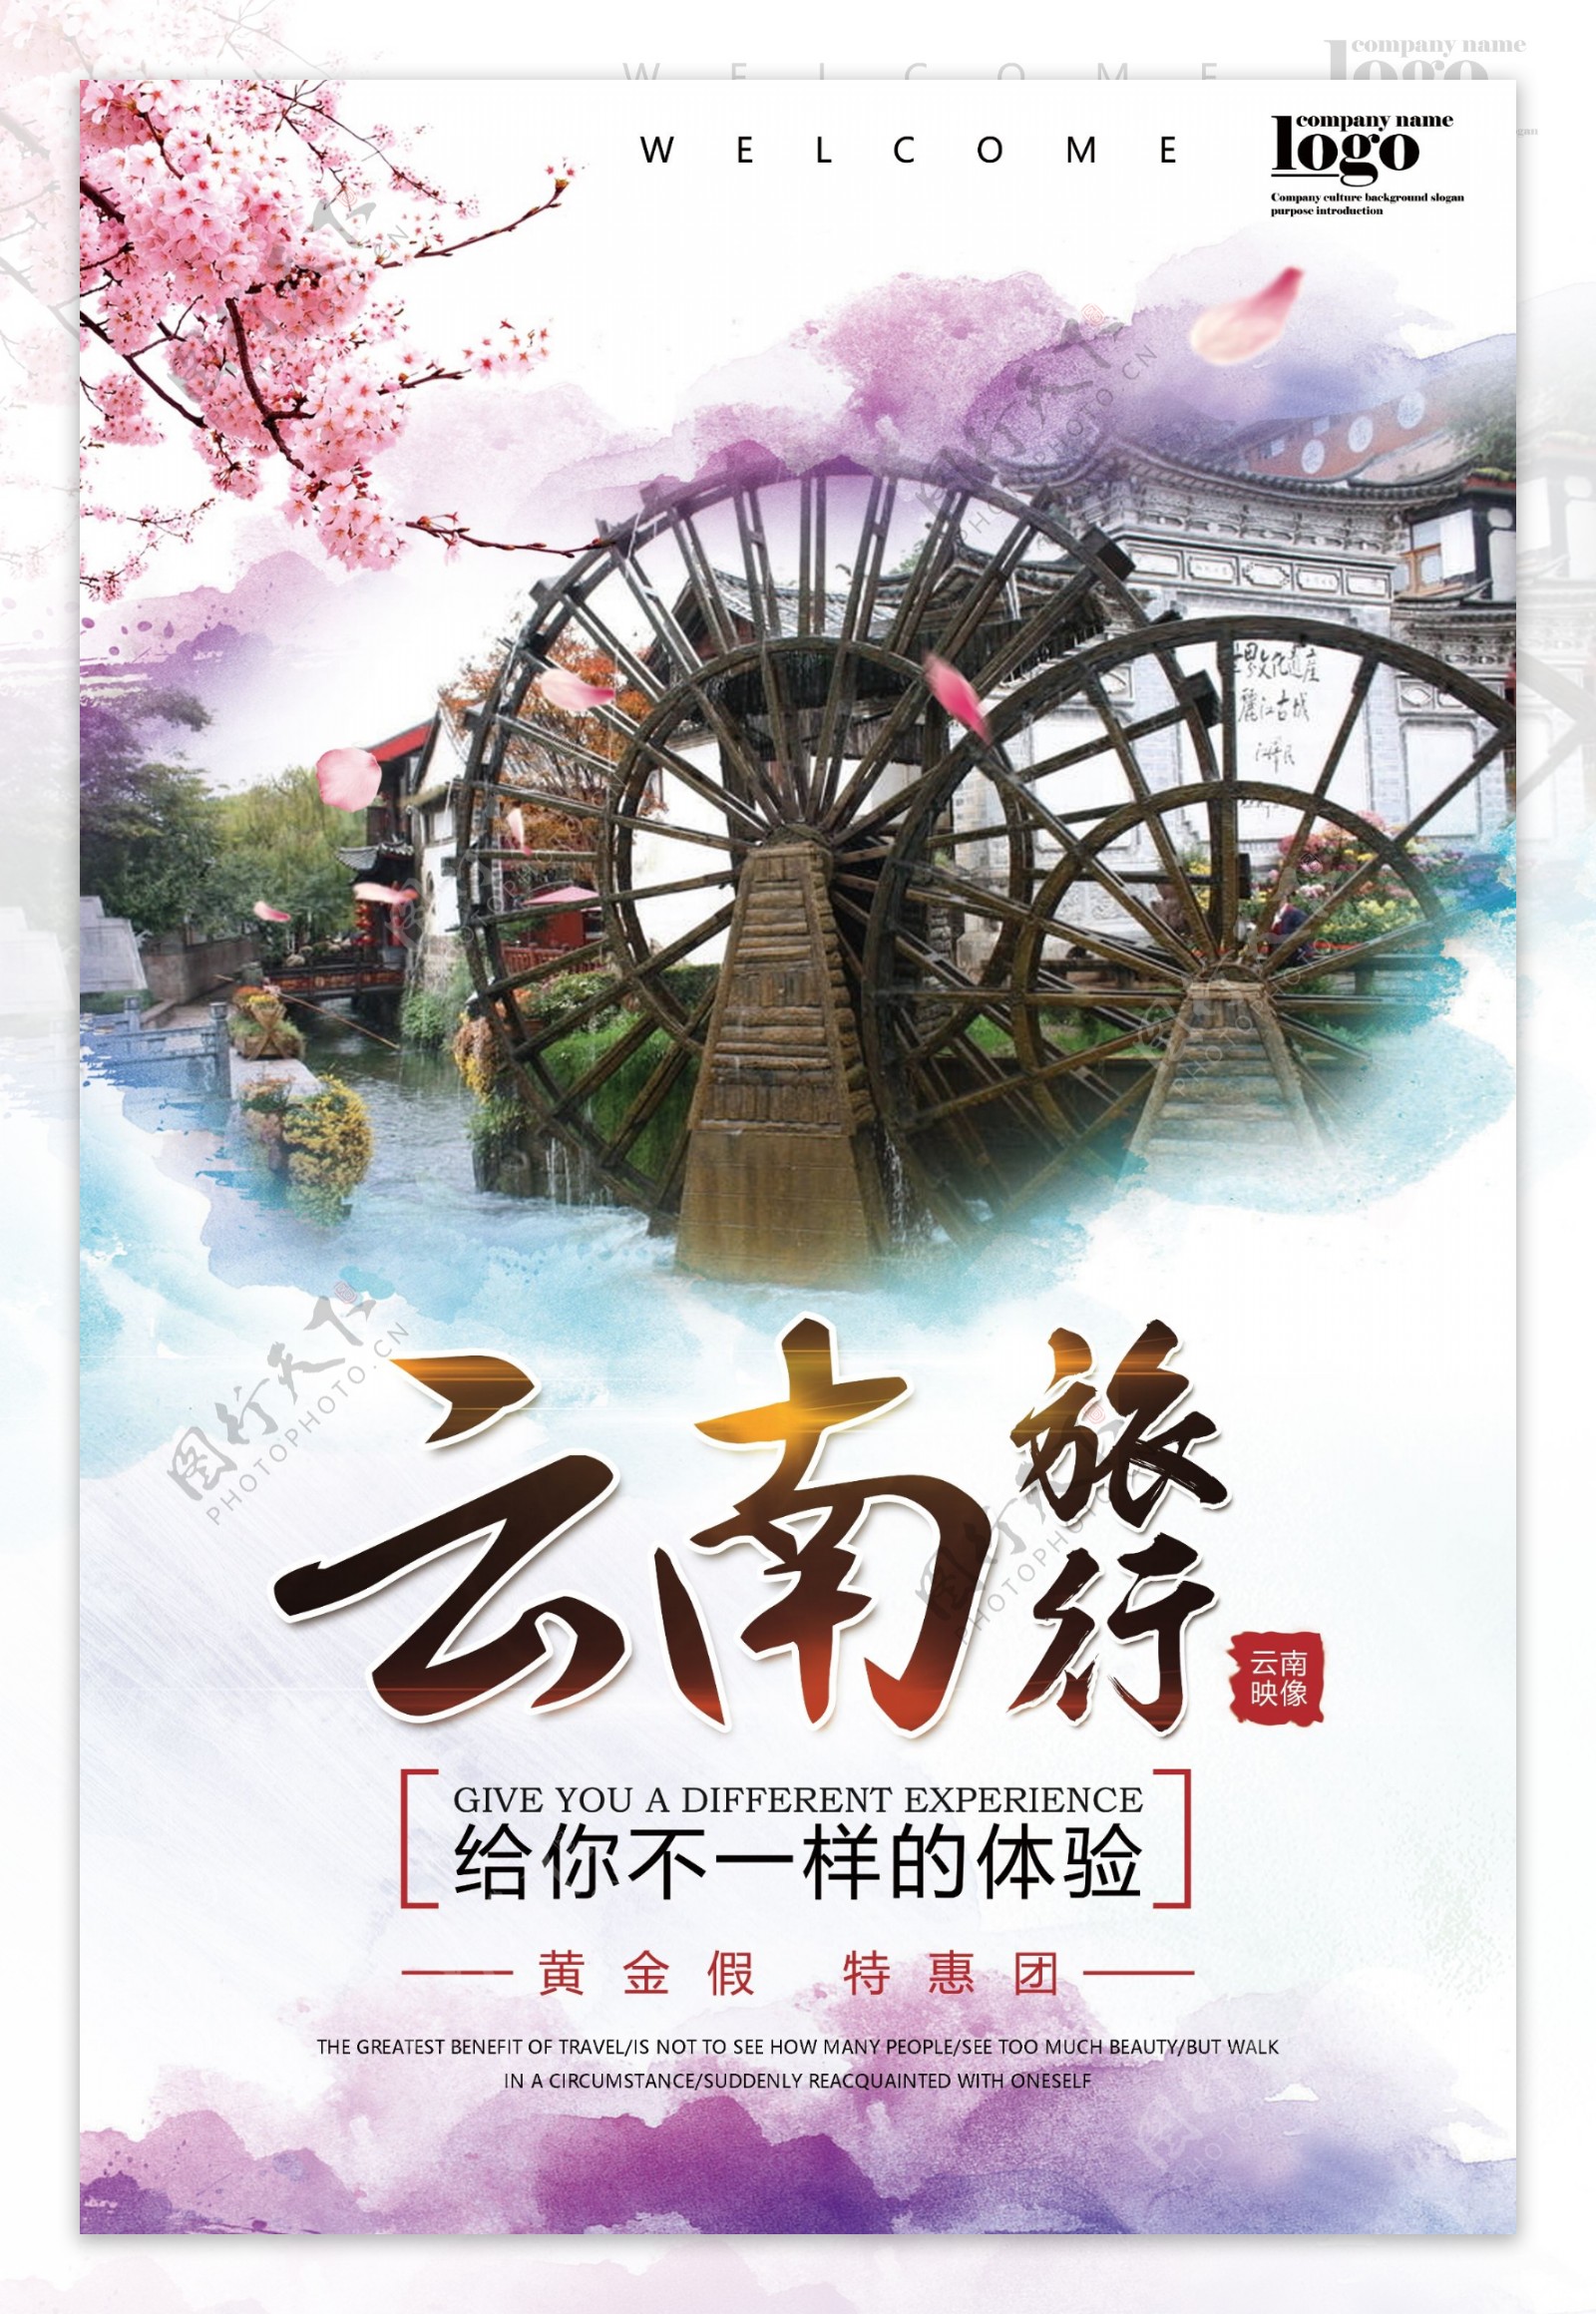 中国风云南旅行旅游宣传海报